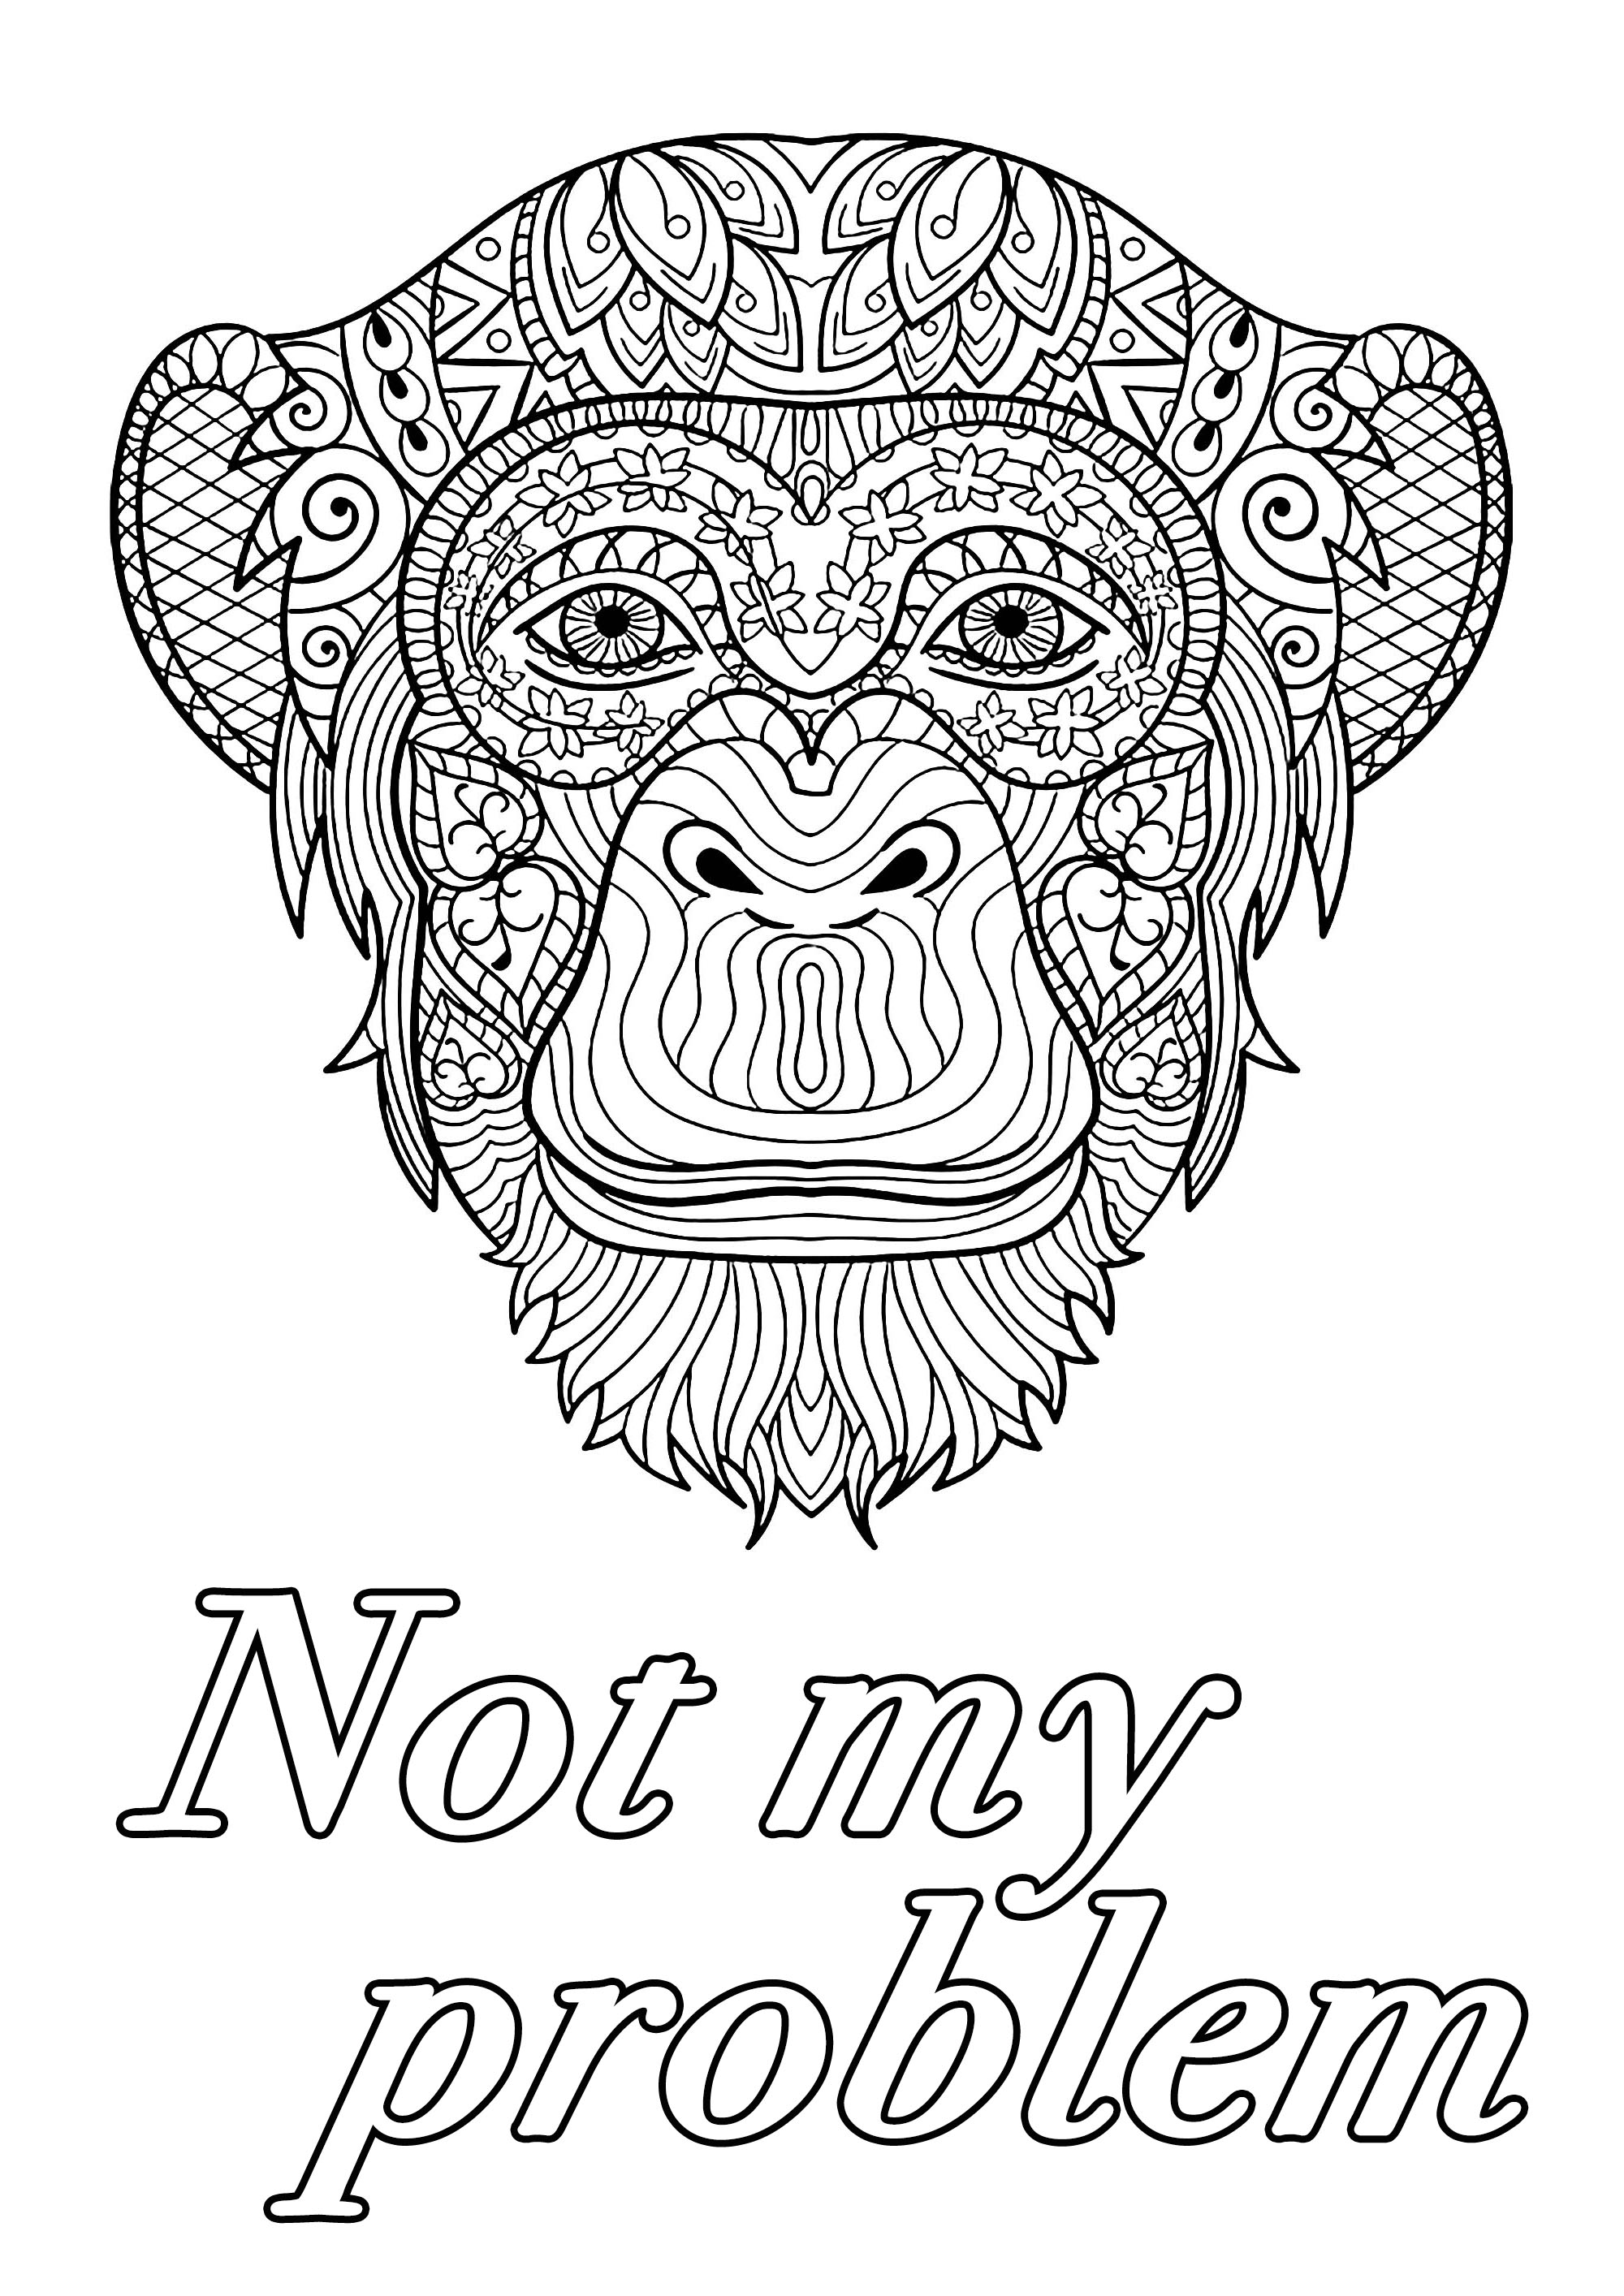 Nicht mein Problem: Schimpfwort-Malvorlage mit großem Affenkopf